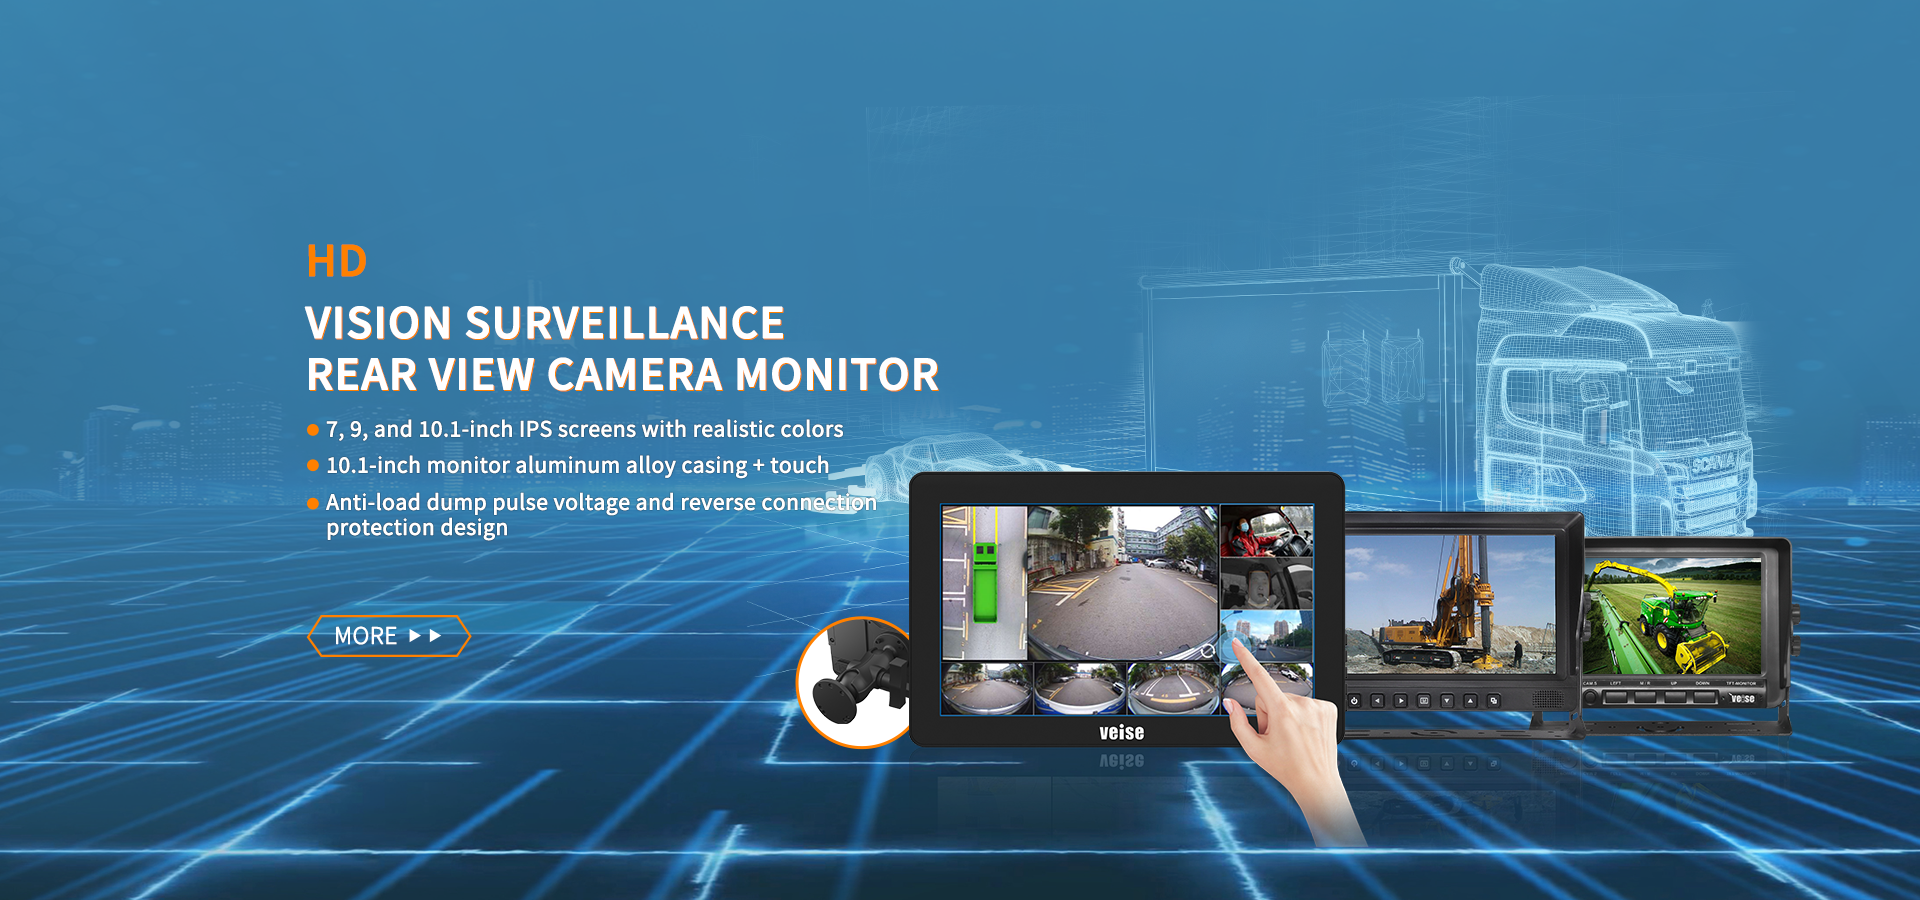 HD Vision Surveillance Camera Monitor